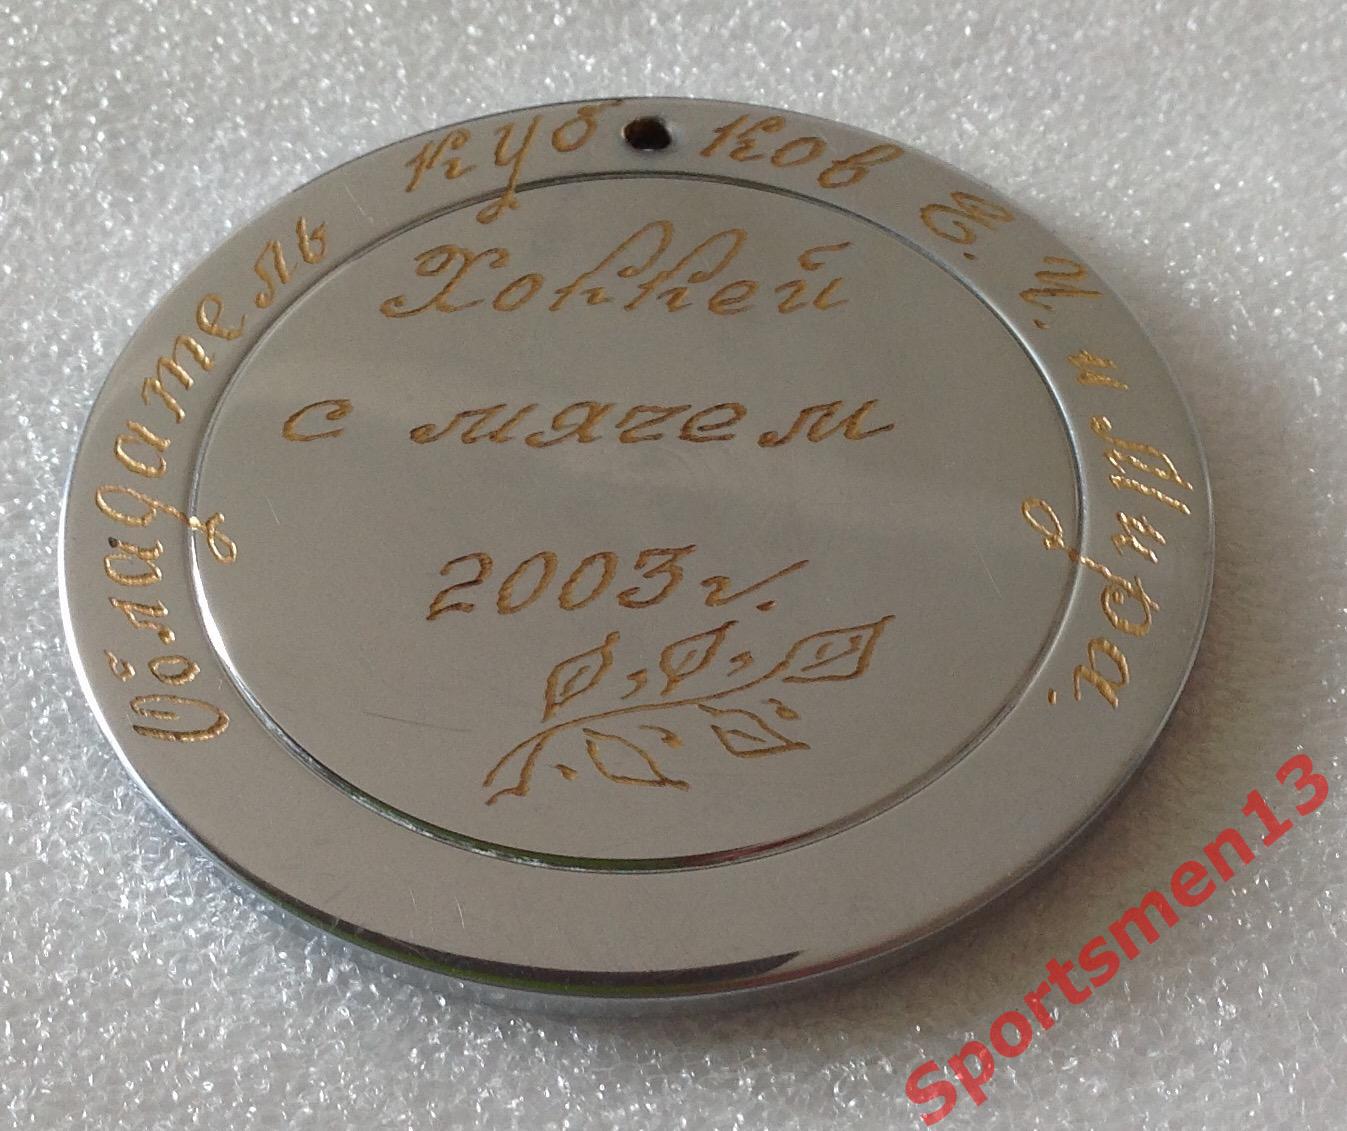 Хоккей с мячом. Медаль памятная. Водник Архангельск, 2003 1